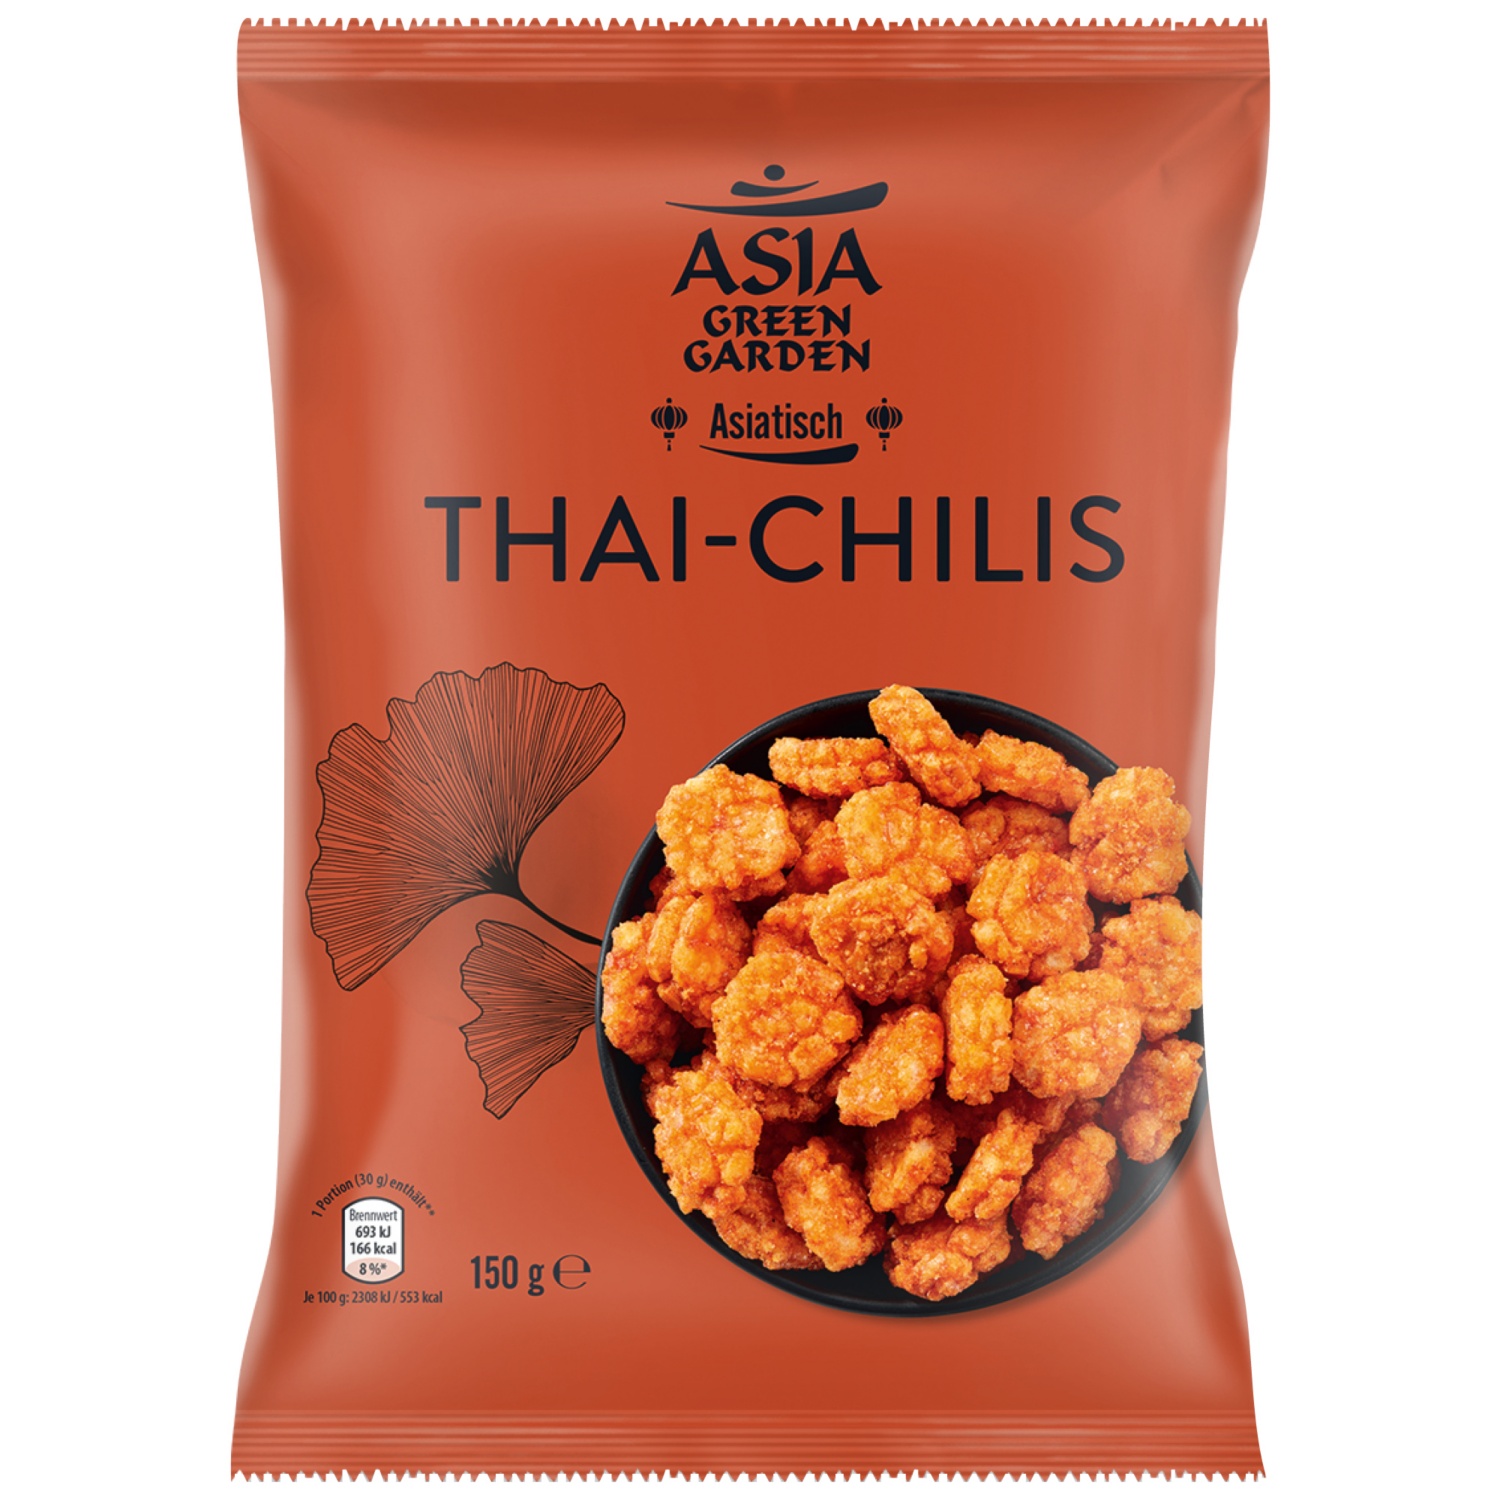 ASIA GREEN GARDEN Asia-Snack-Mix, Thai Chili